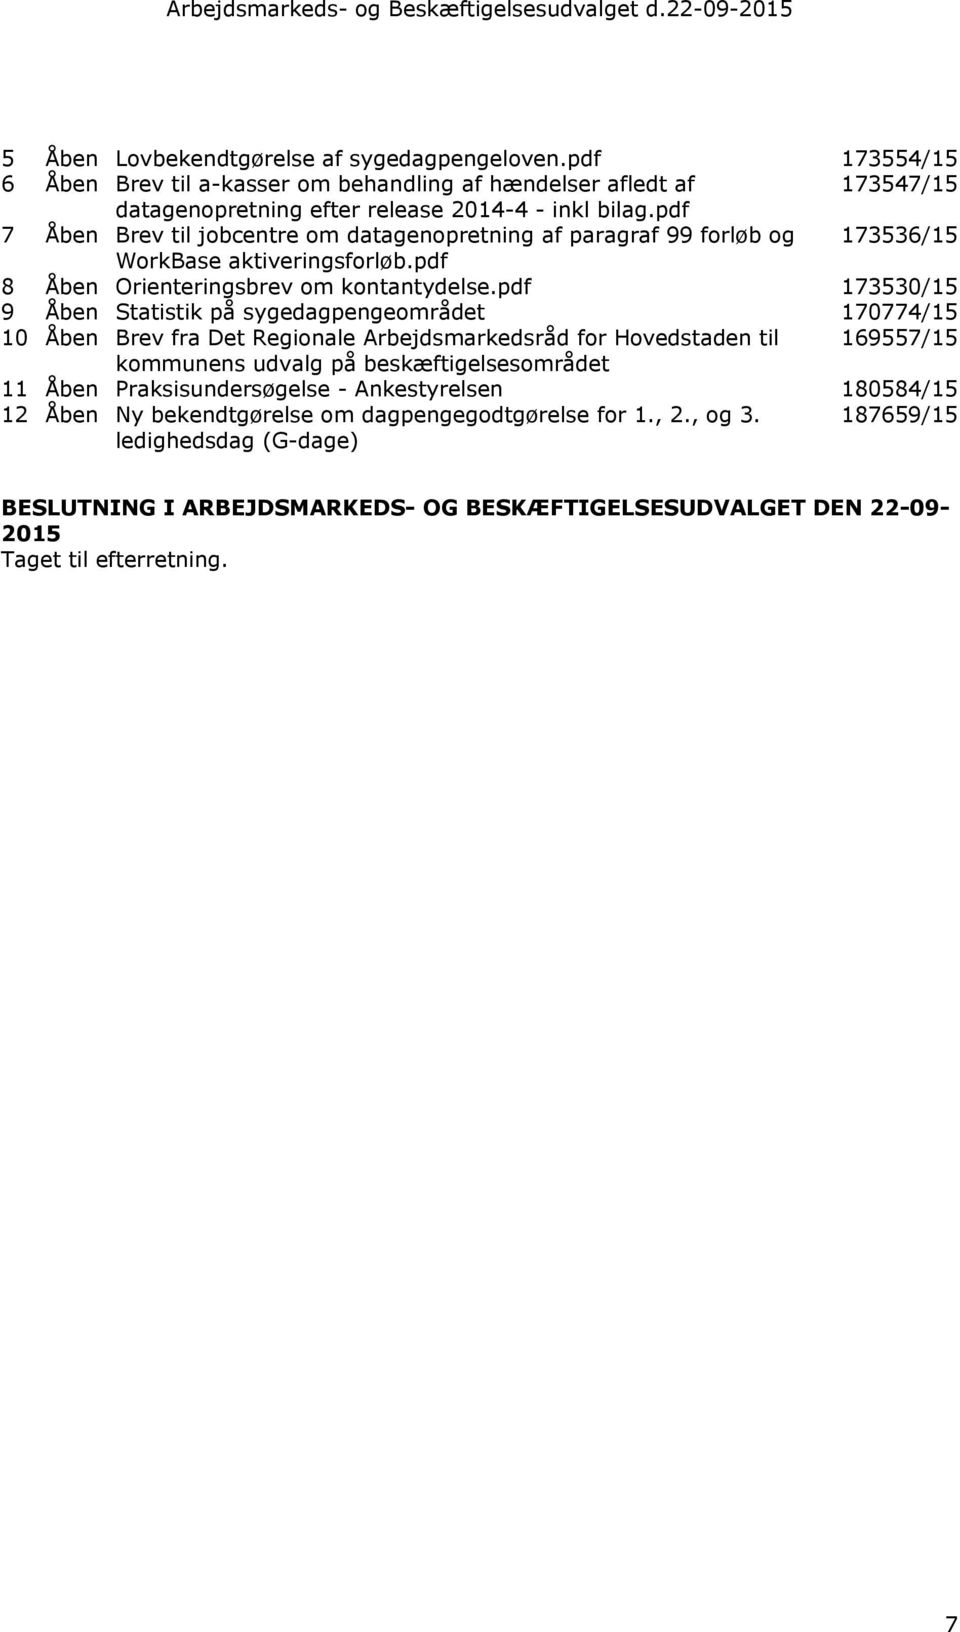 pdf 7 Åben Brev til jobcentre om datagenopretning af paragraf 99 forløb og 173536/15 WorkBase aktiveringsforløb.pdf 8 Åben Orienteringsbrev om kontantydelse.